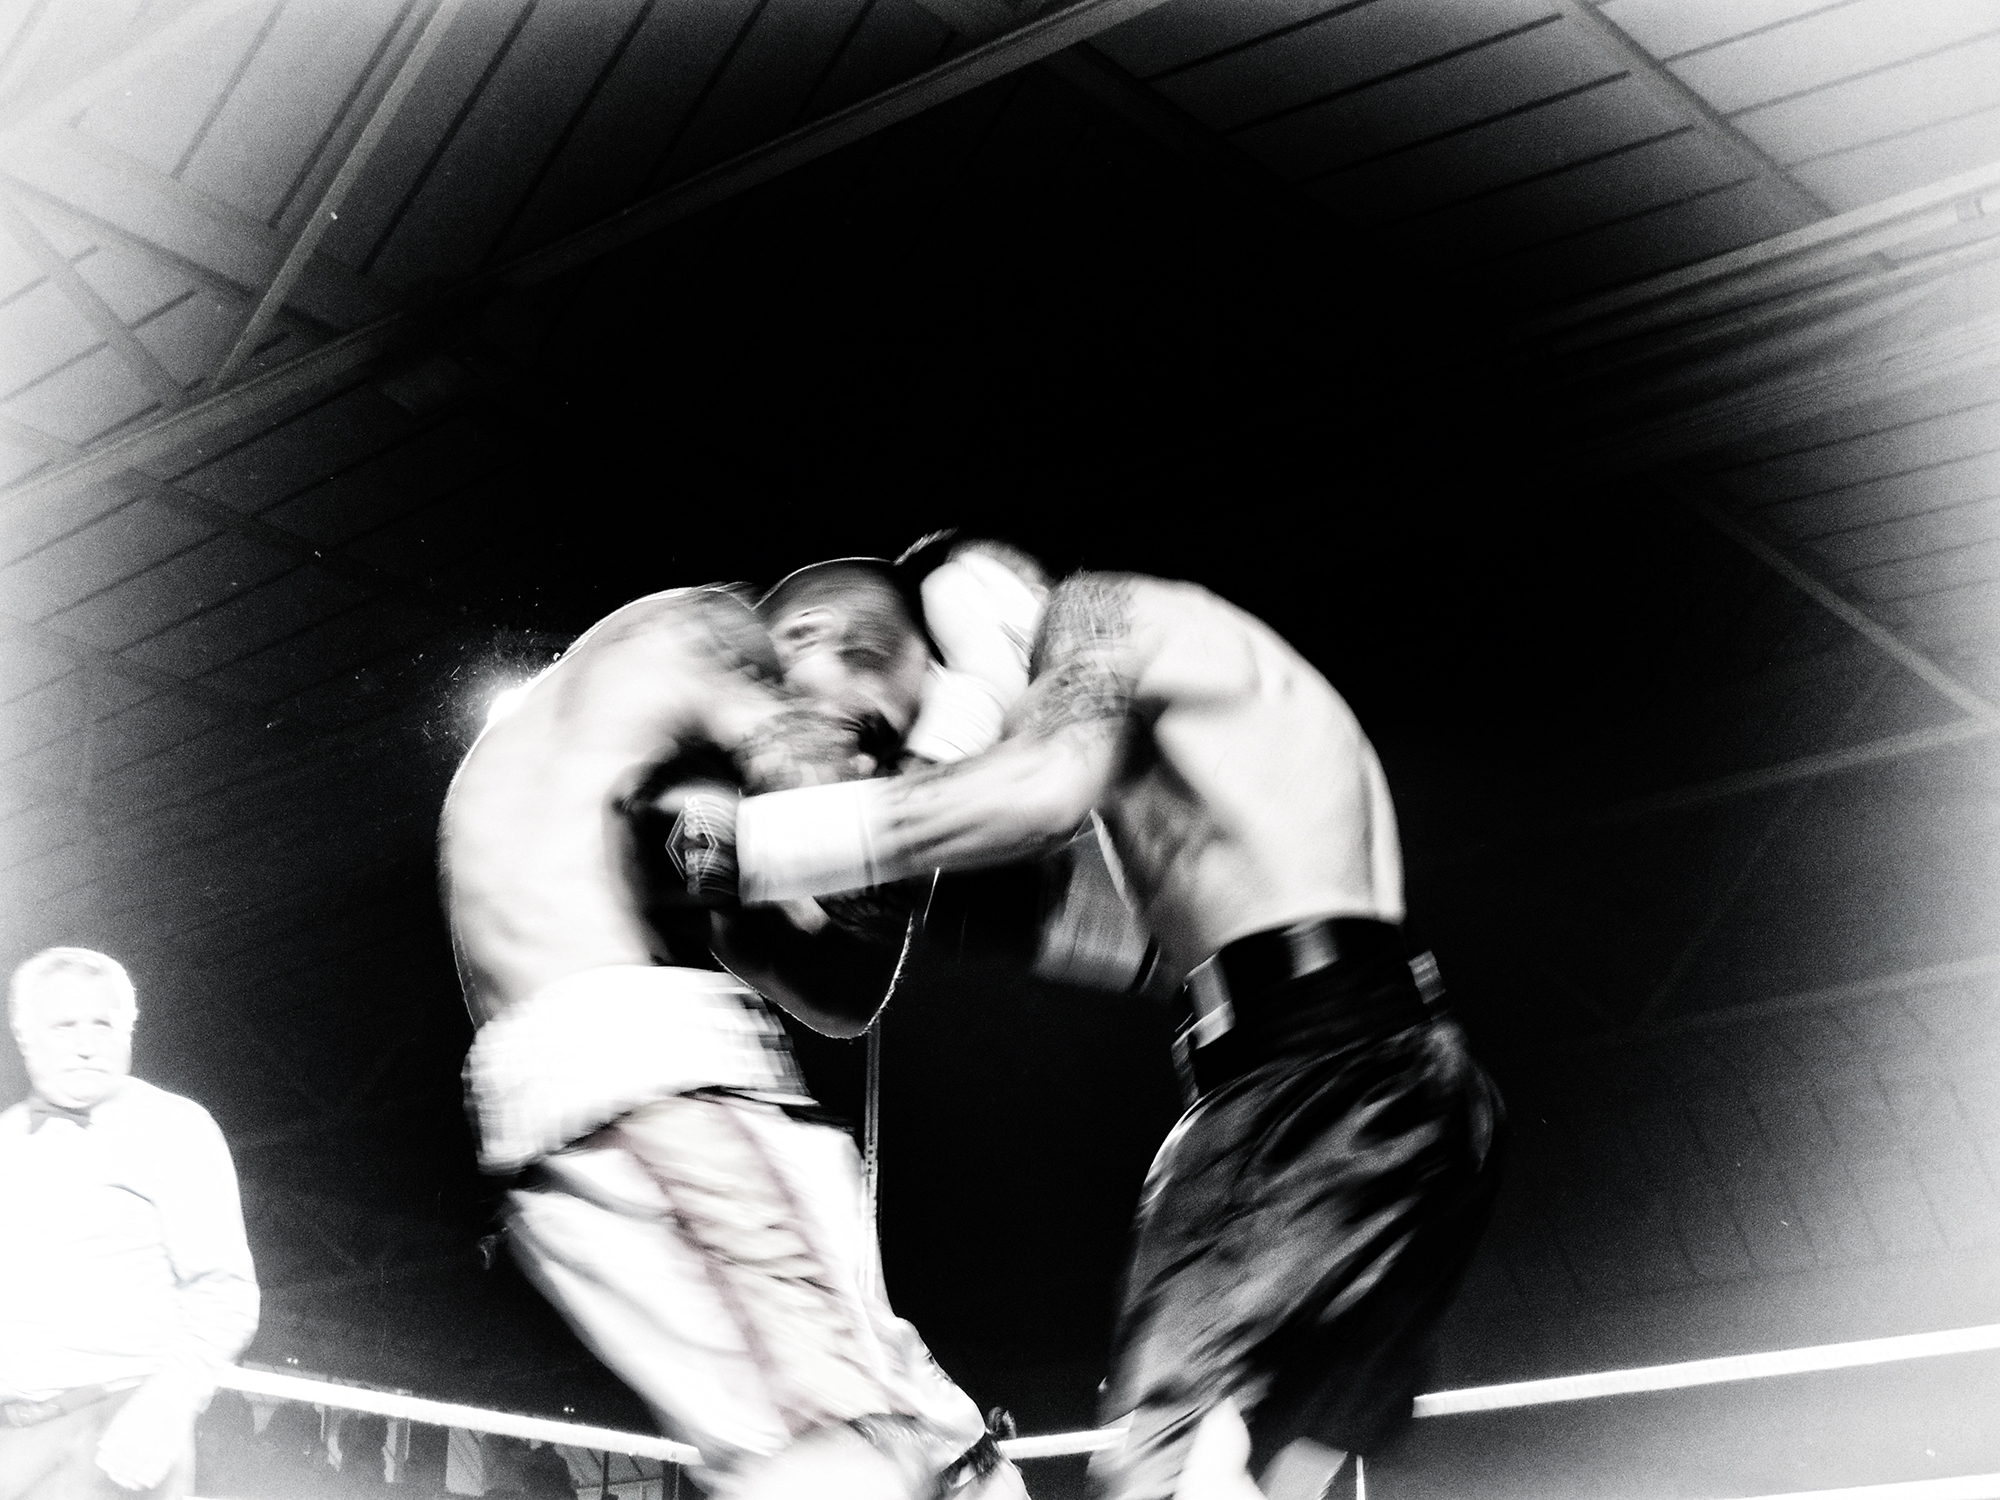 Boxeo en Bilbao: Ignasi Caballero y Kerman Lejarraga, en el centro del ring, el corazón del combate. (Iñaki Mendizabal) 